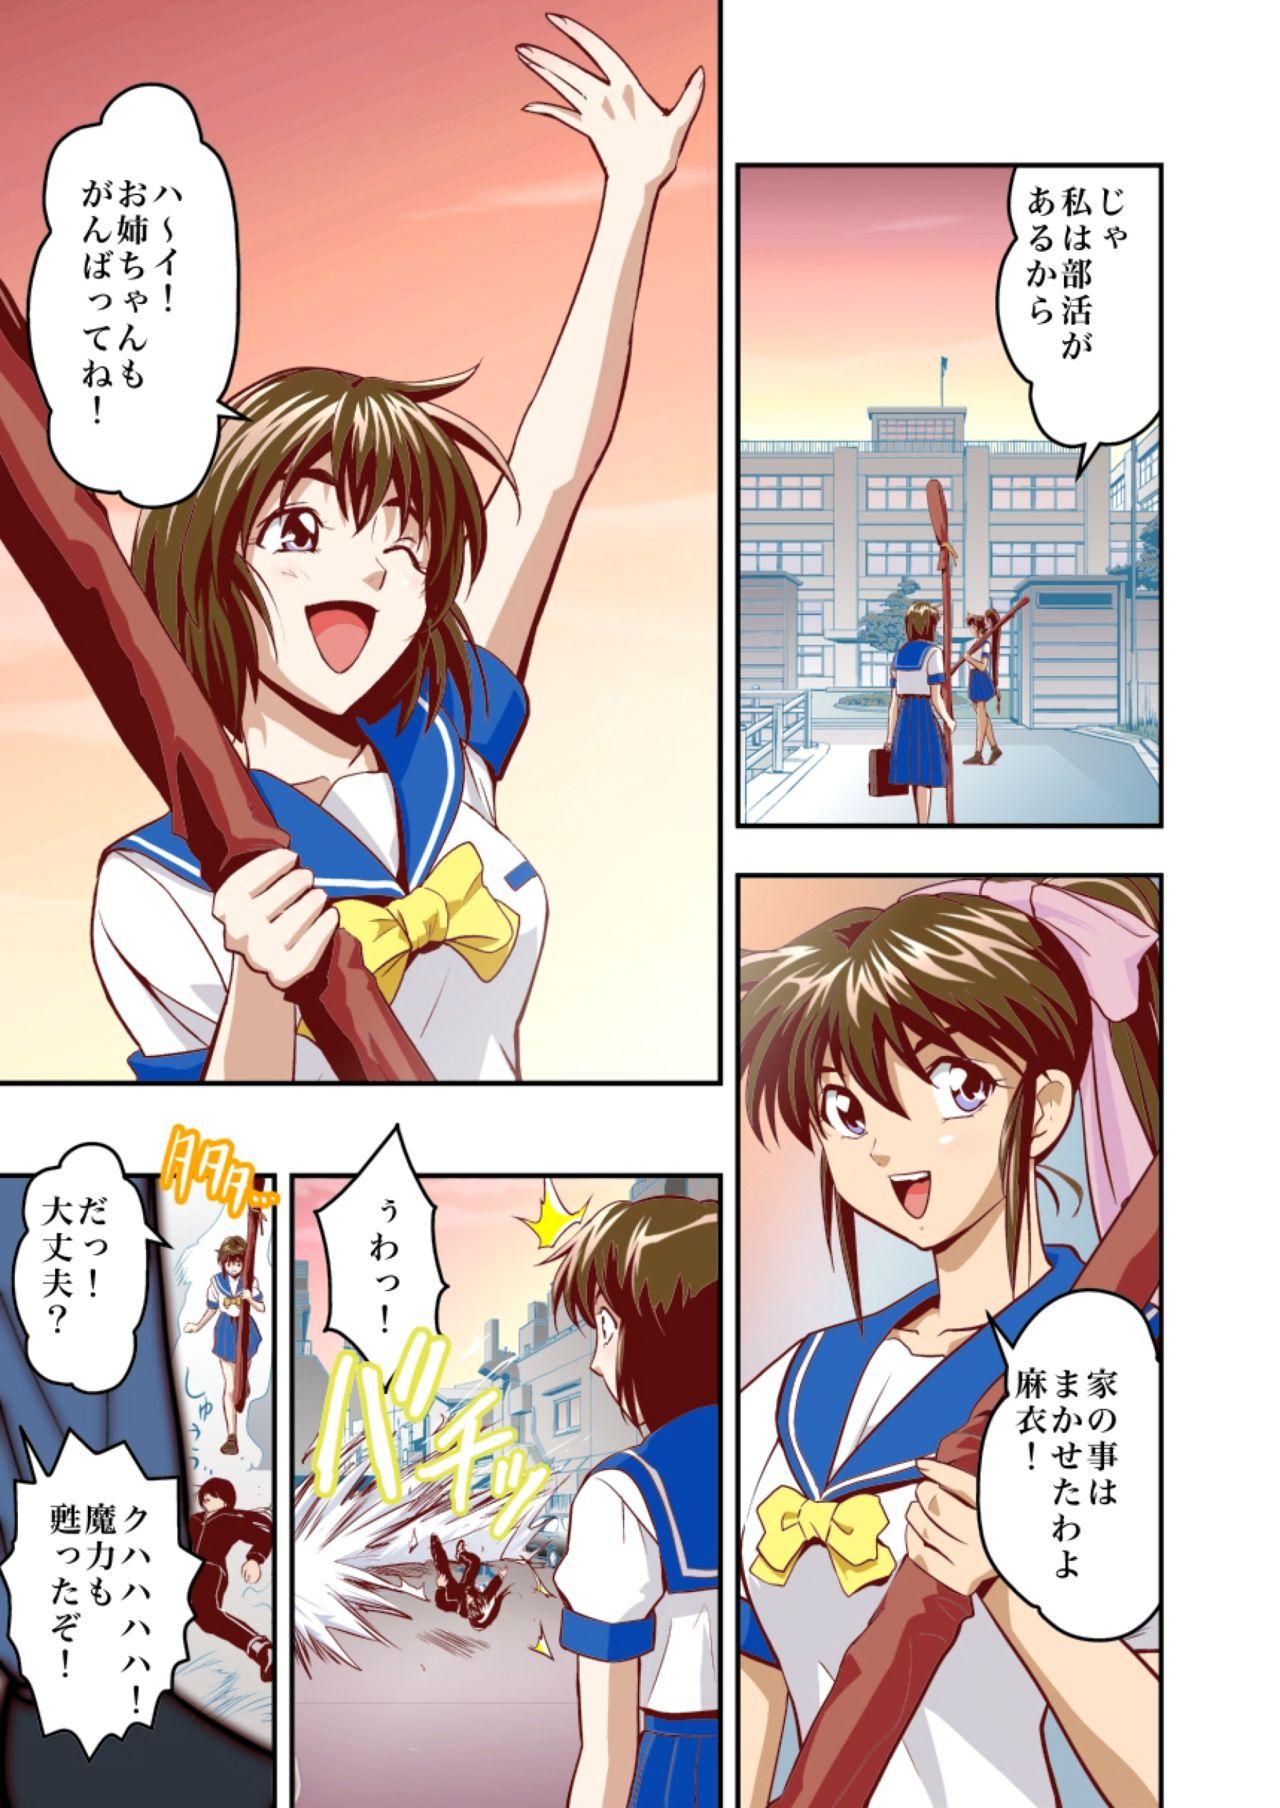 Nerd FallenXXangeL1 Ingyaku no Mai Joukan Full Color - Twin angels Curious - Page 5